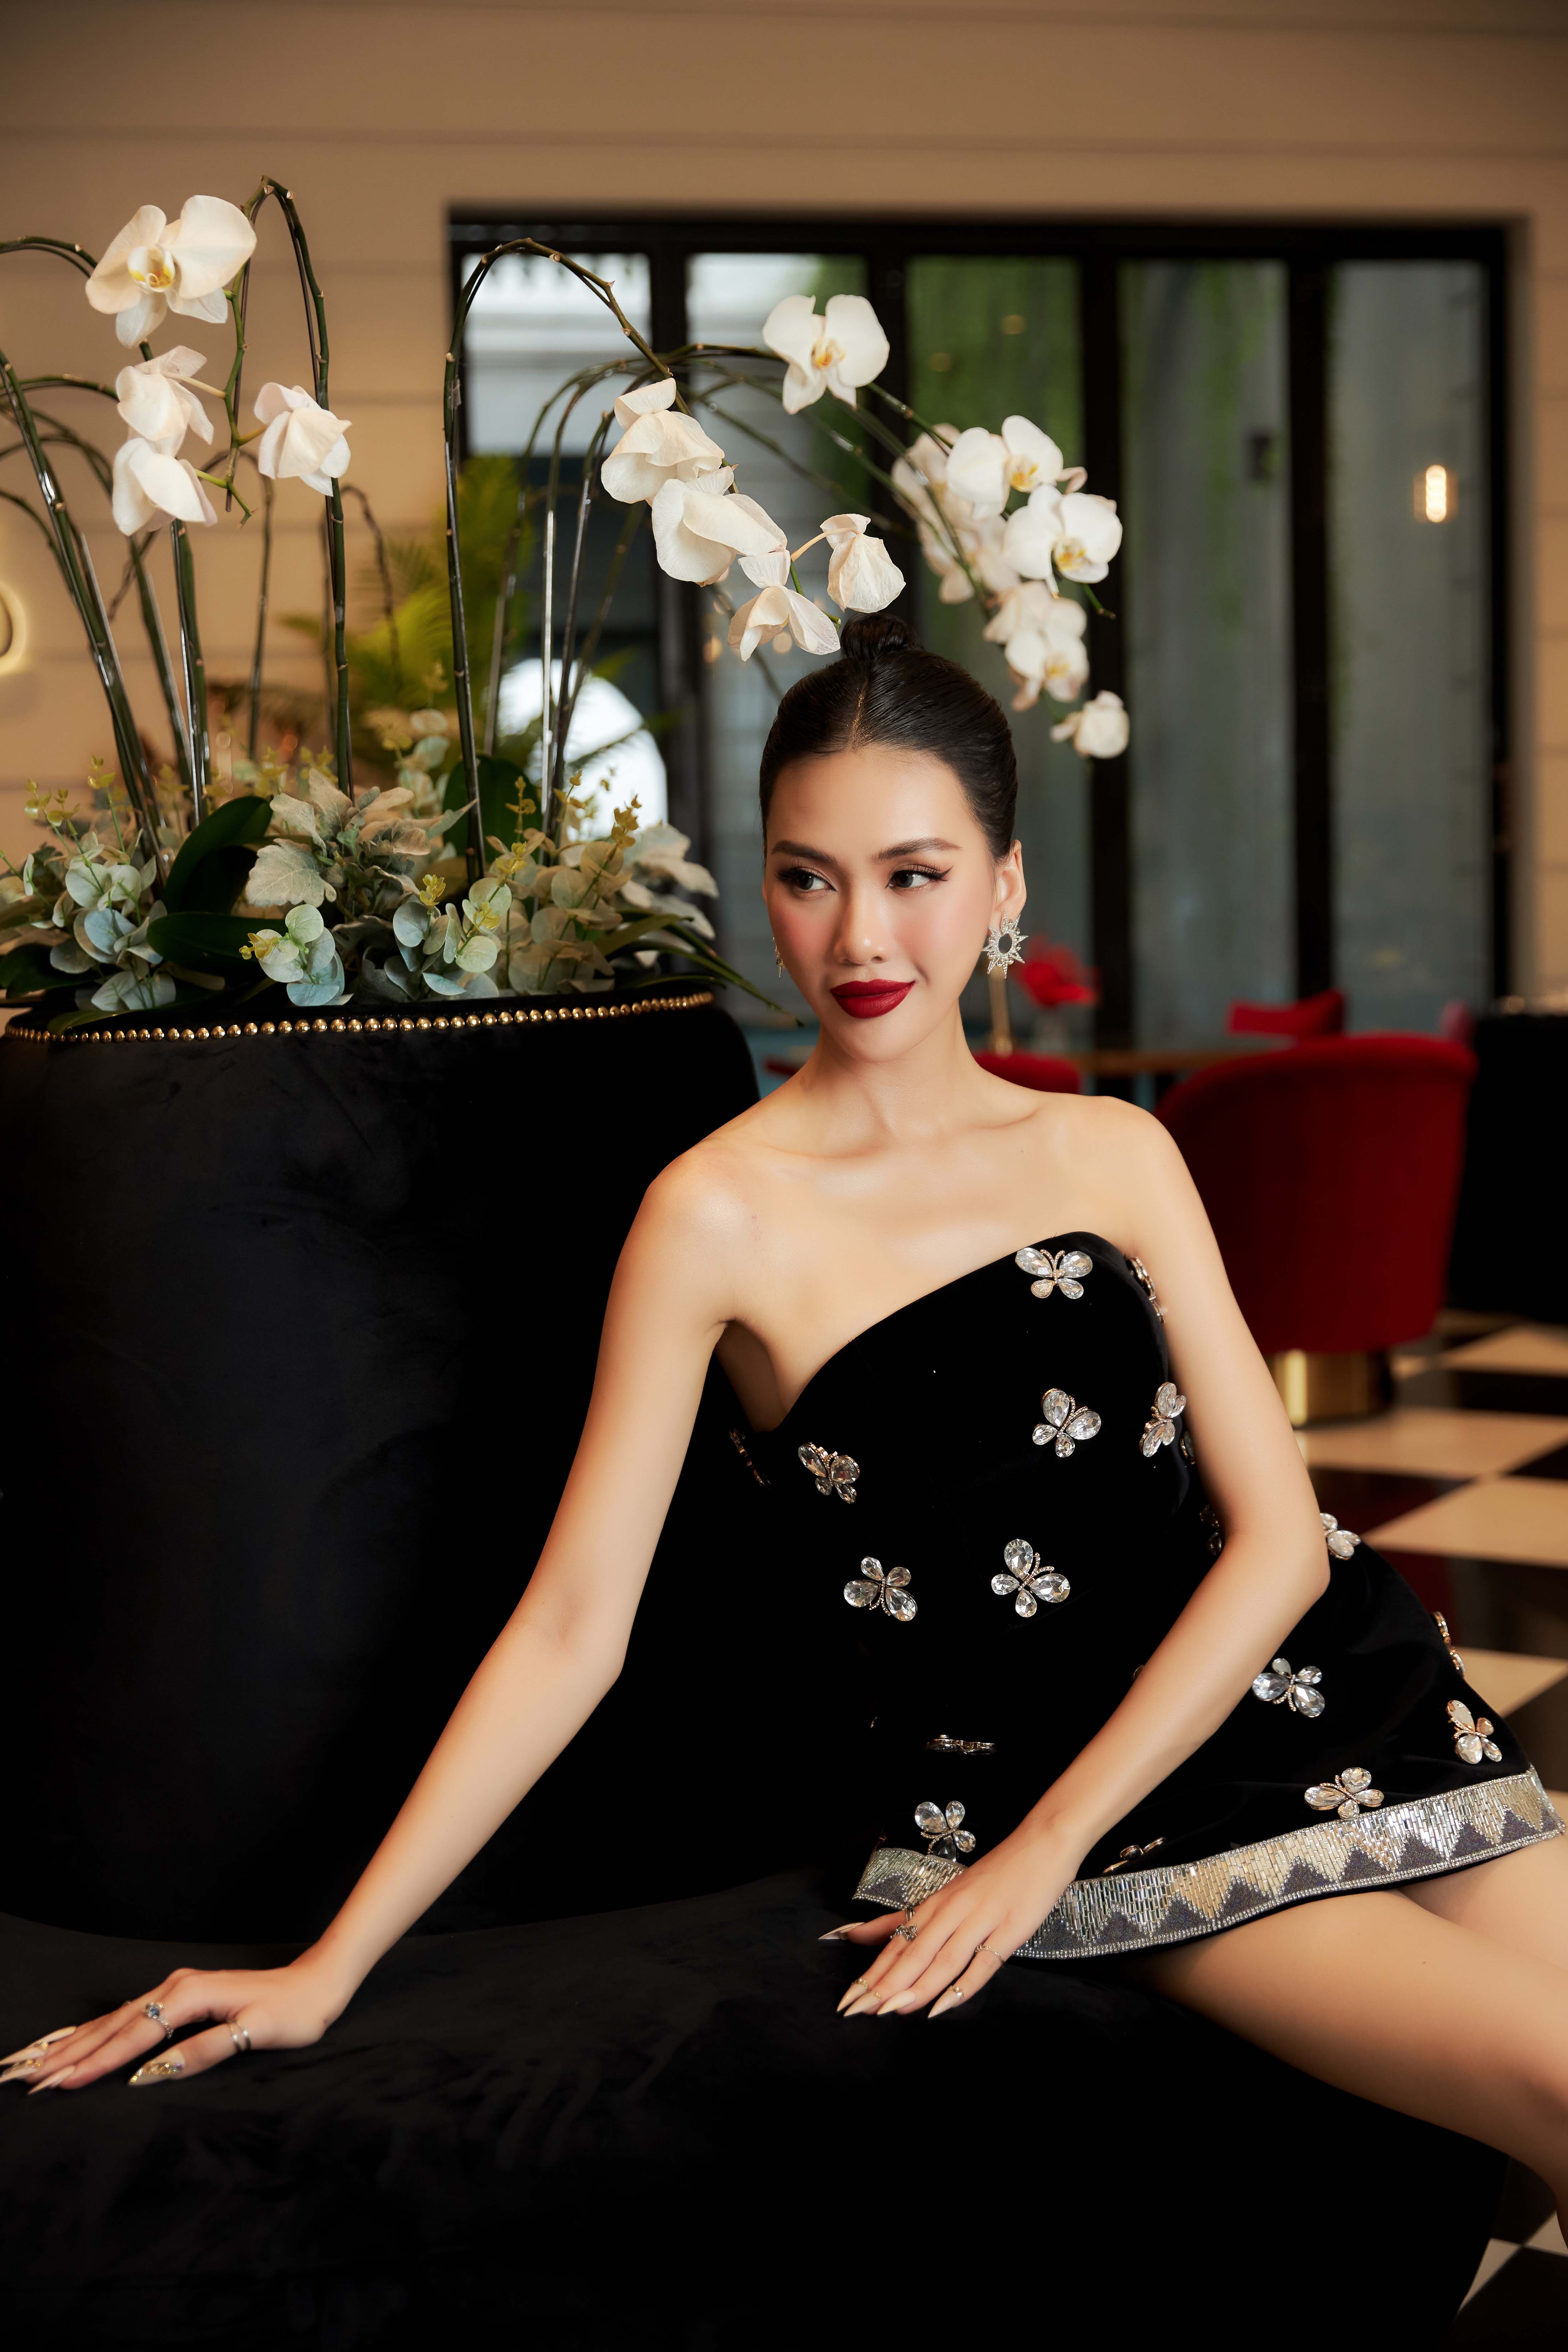 Siêu mẫu Bùi Quỳnh Hoa: “Hoa hậu xứng đáng diễn vedette”